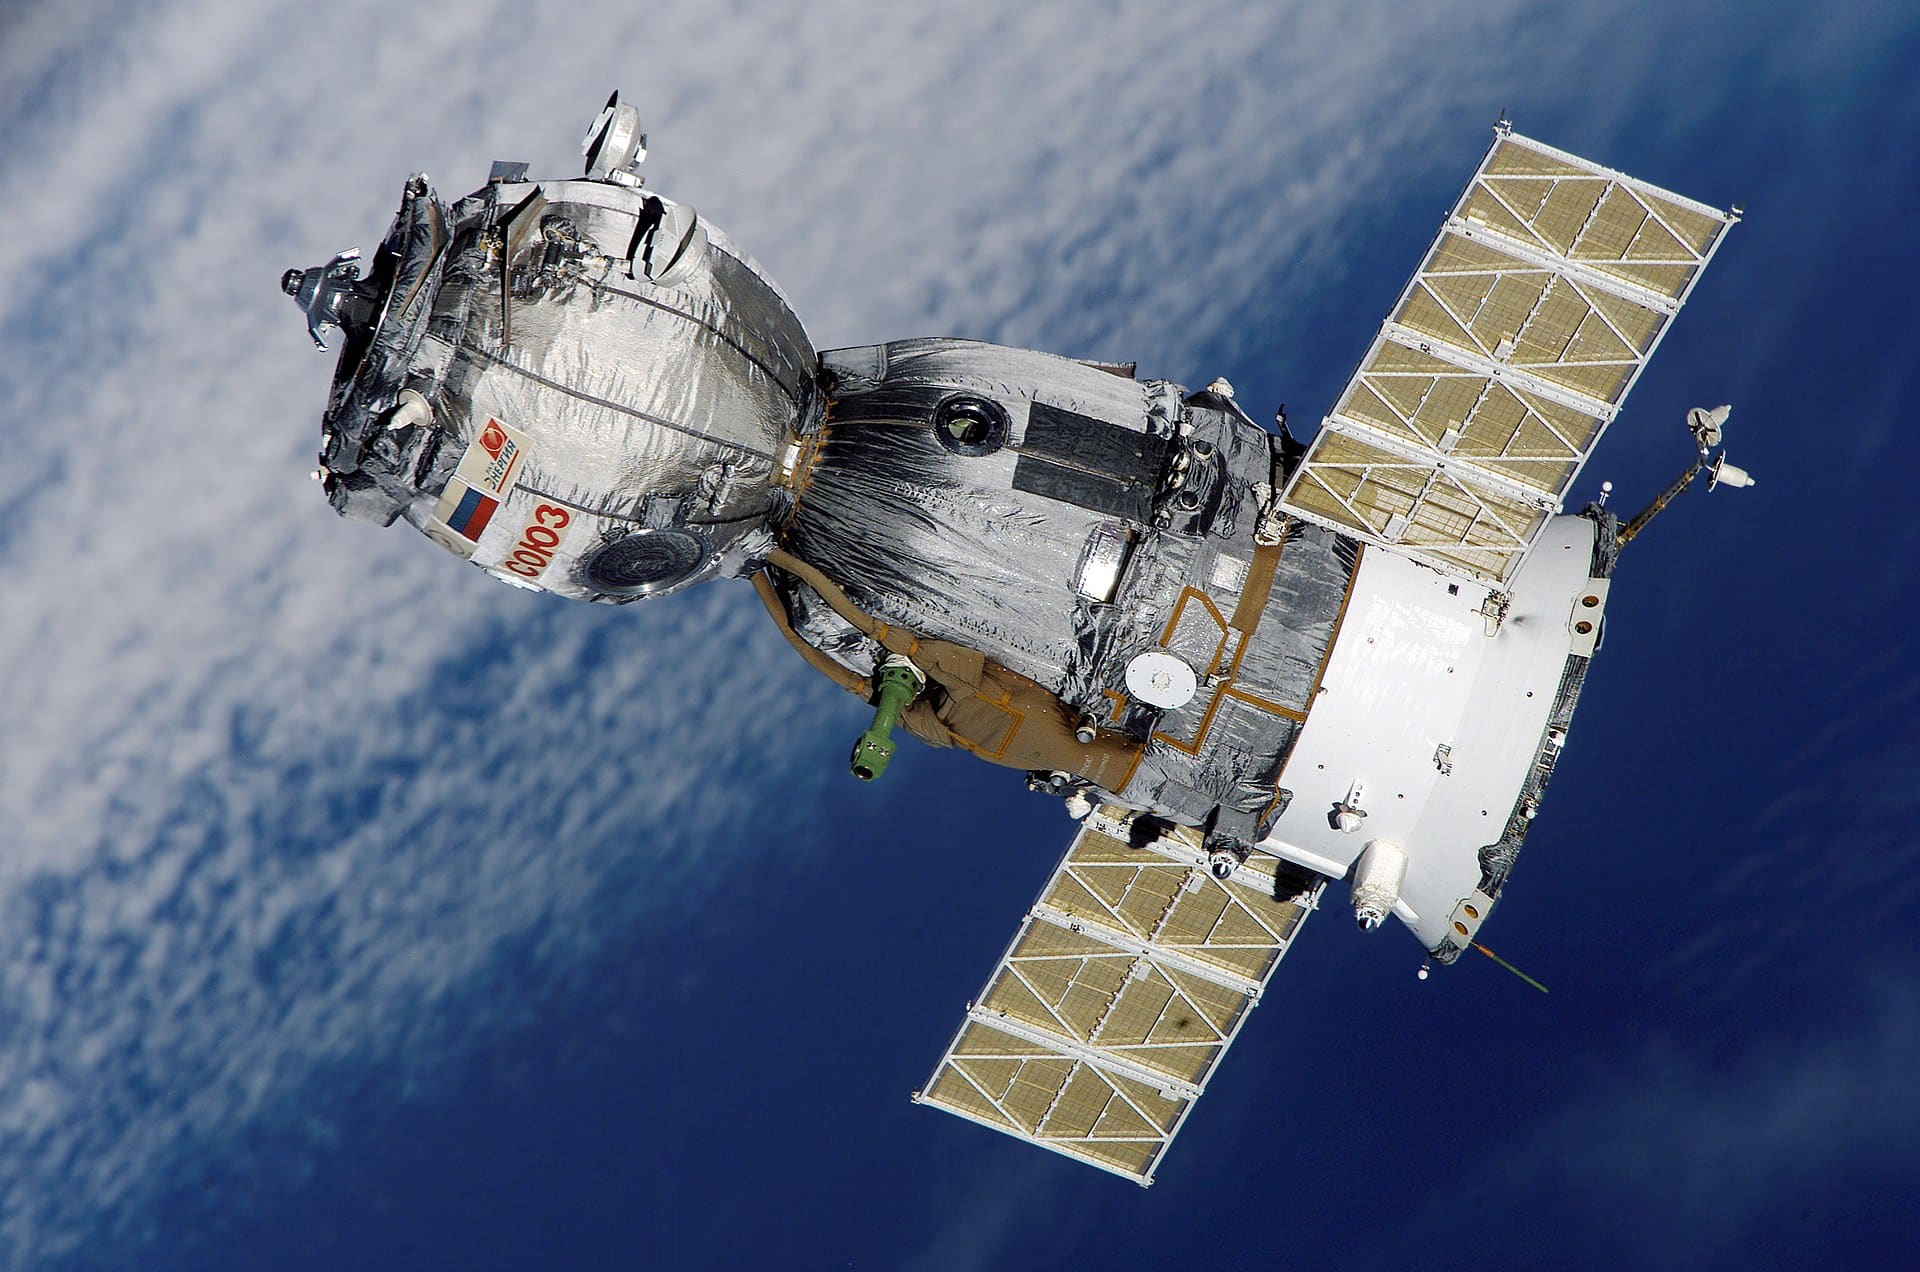 Photographie du Soyouz qui approche de la Station Spatiale internationale.